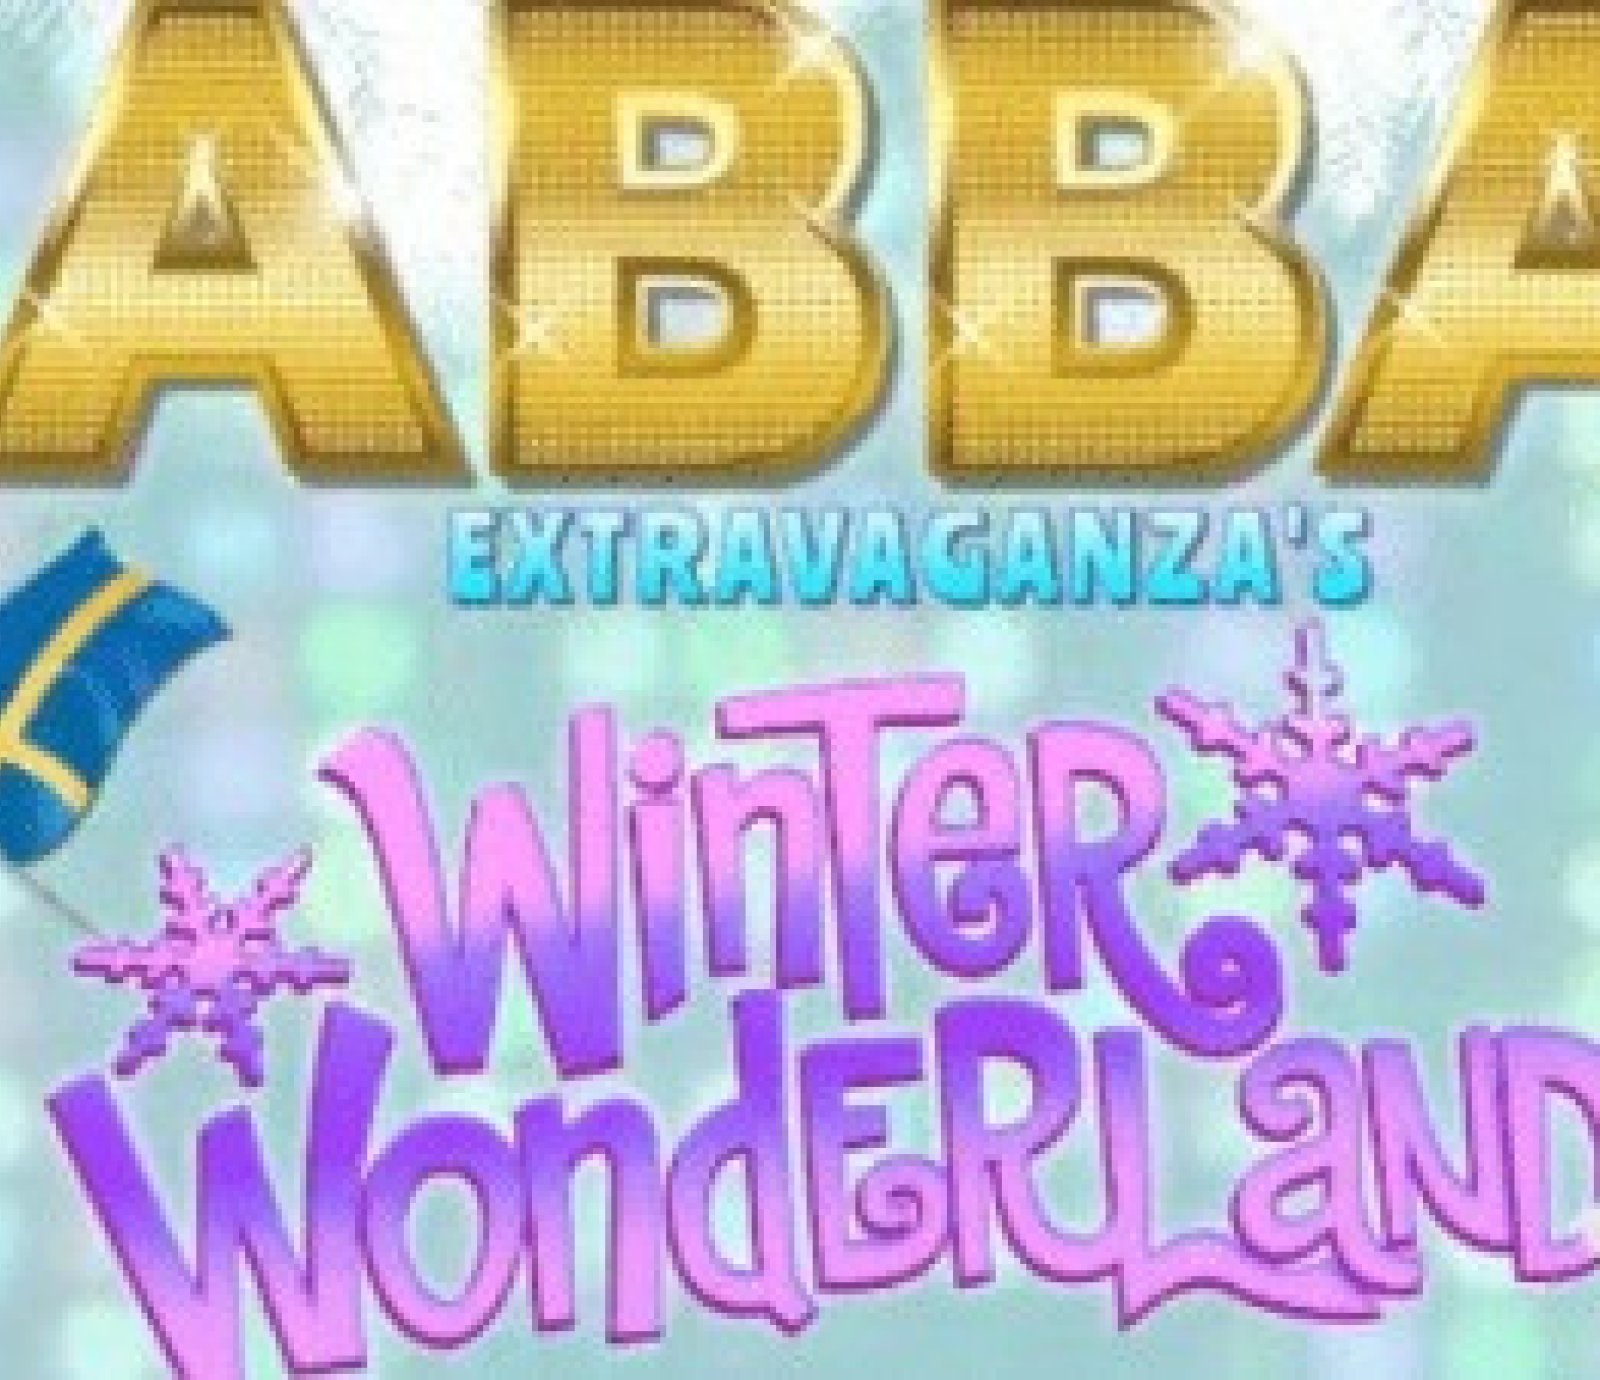 ABBA Extravaganza's Winter Wonderland